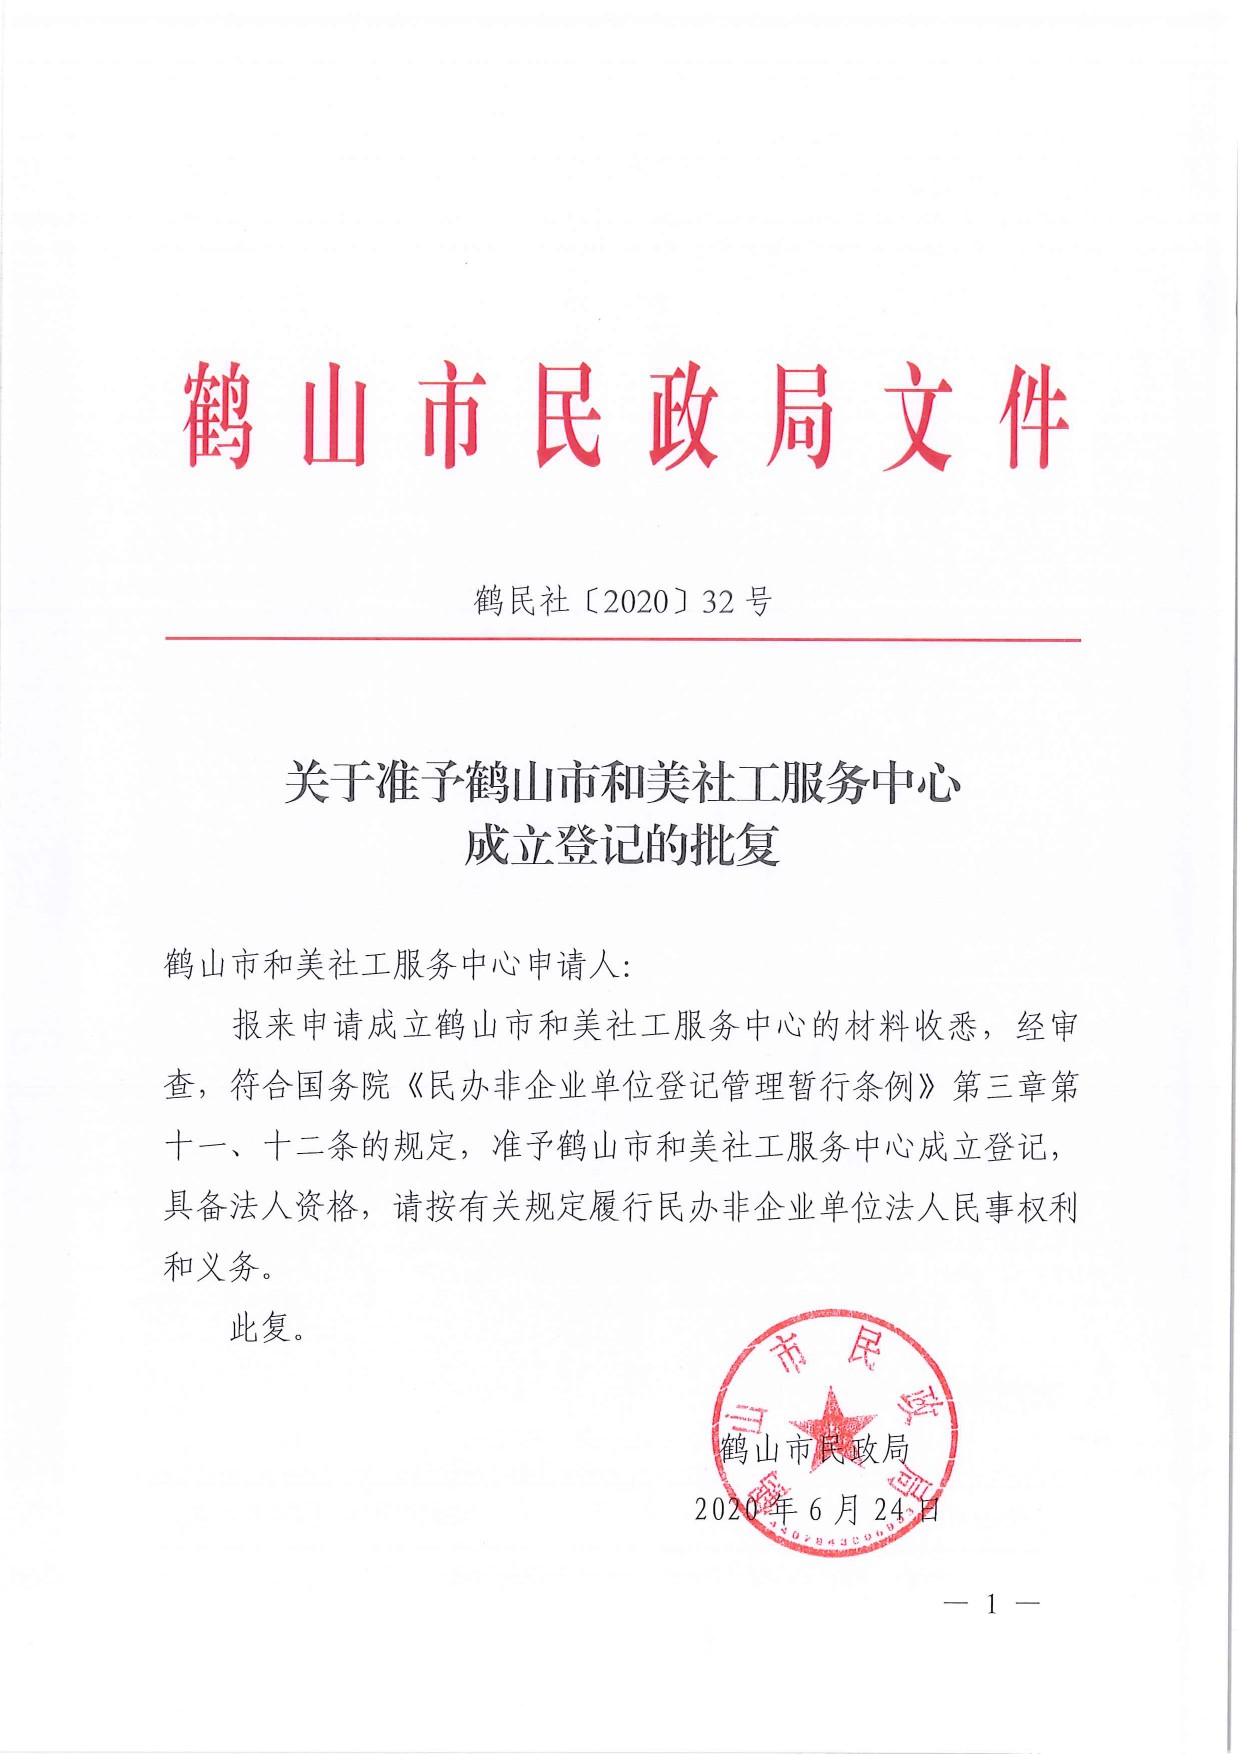 鹤民社〔2020〕32号关于准予鹤山市和美社工服务中心成立登记的批复-3.jpg